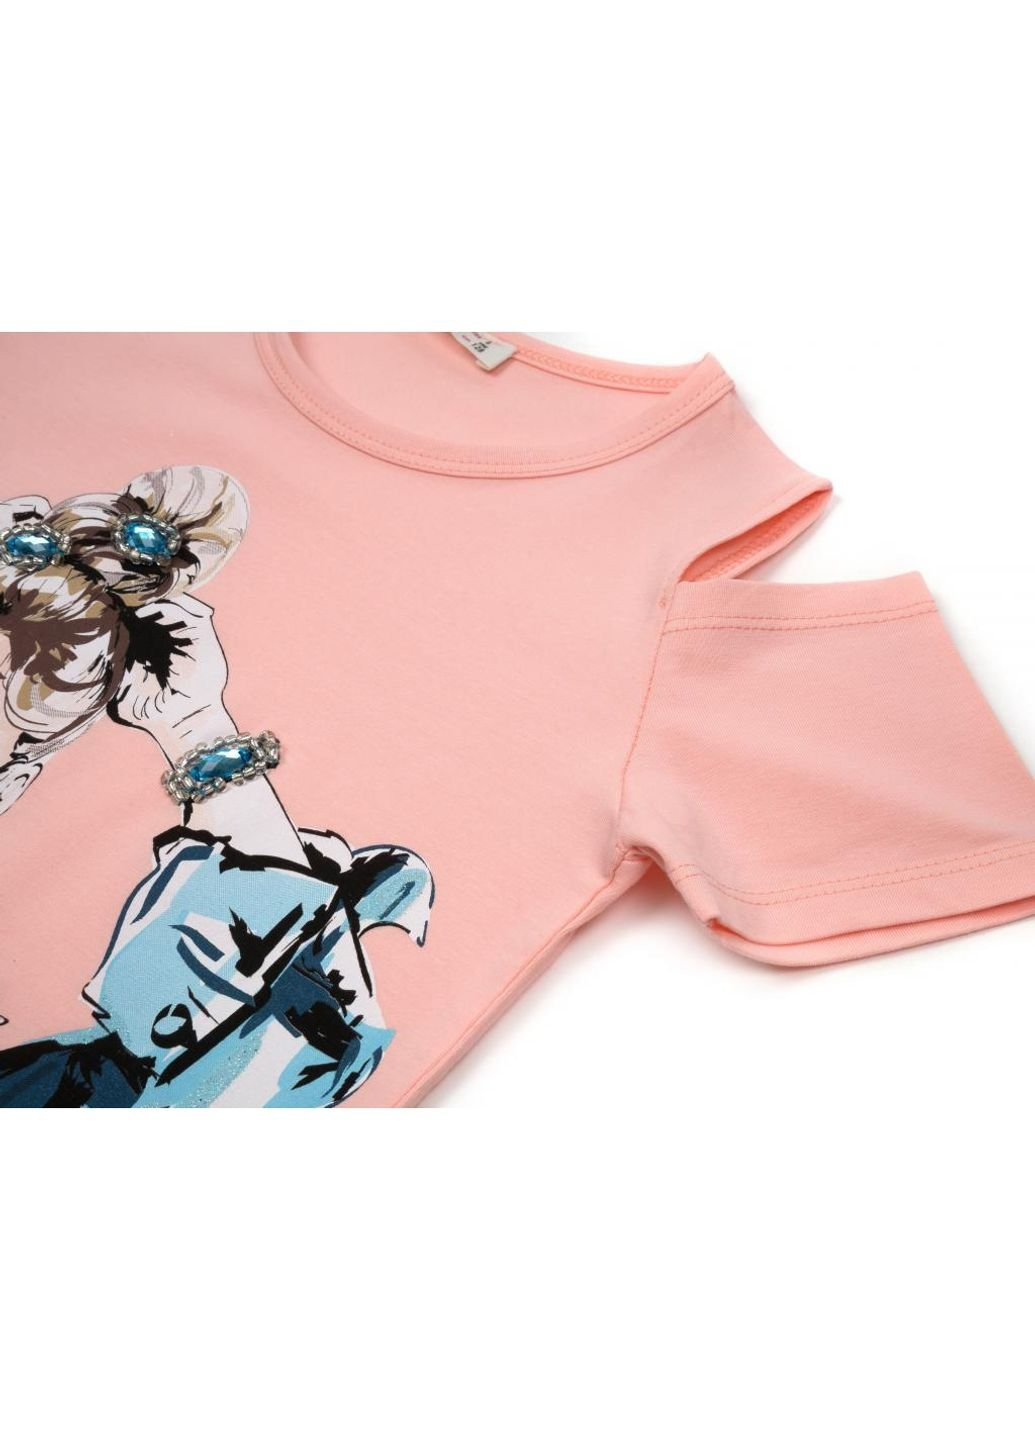 Персиковая демисезонная футболка детская с девочкой (14124-128g-peach) Breeze